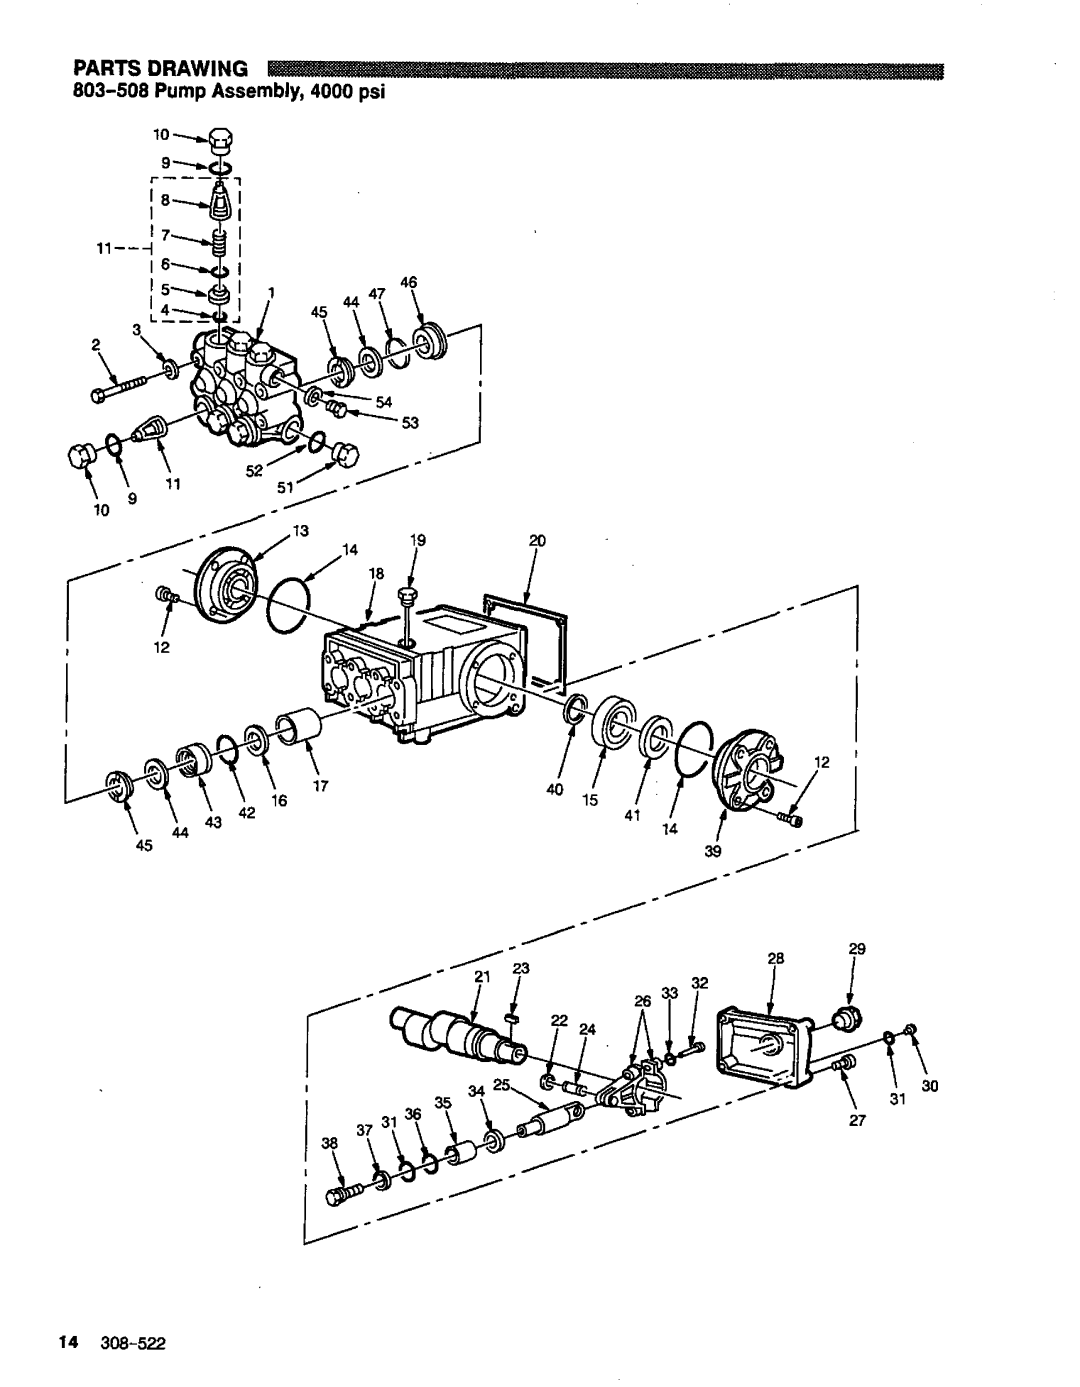 Graco Inc 4040, 800-345 manual 803-508Pump Assembly,4000 psi, Parts Drawing, 14308-522 